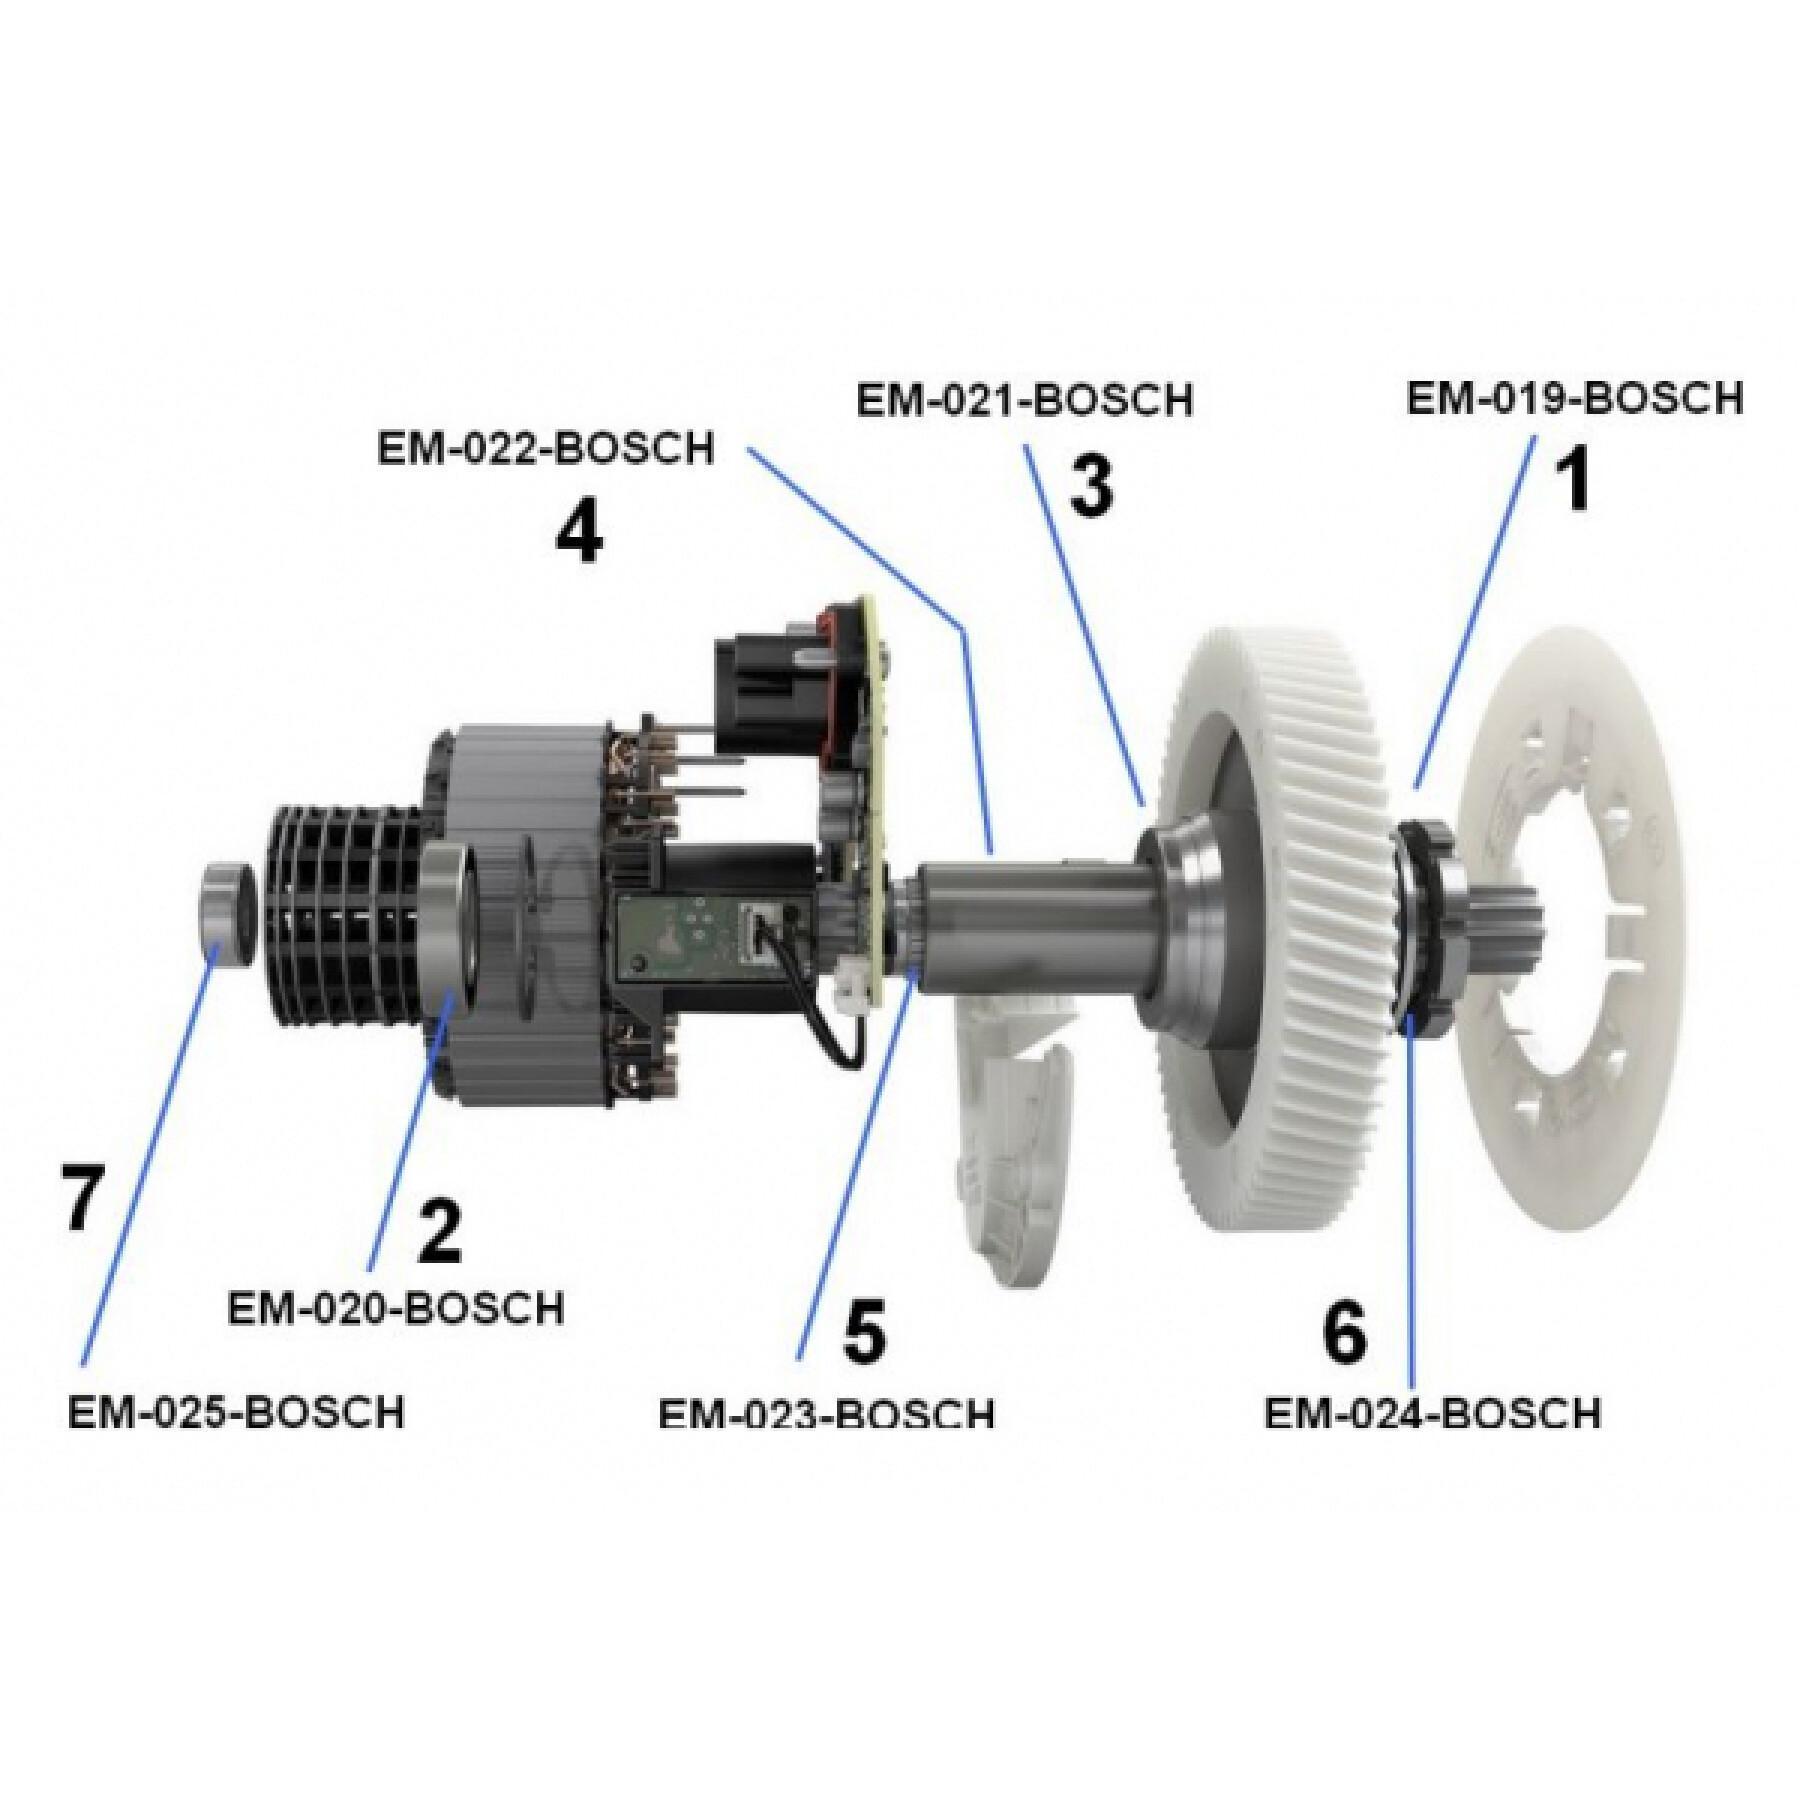 Bearing kit for motor Black Bearing Bosch Generation 3